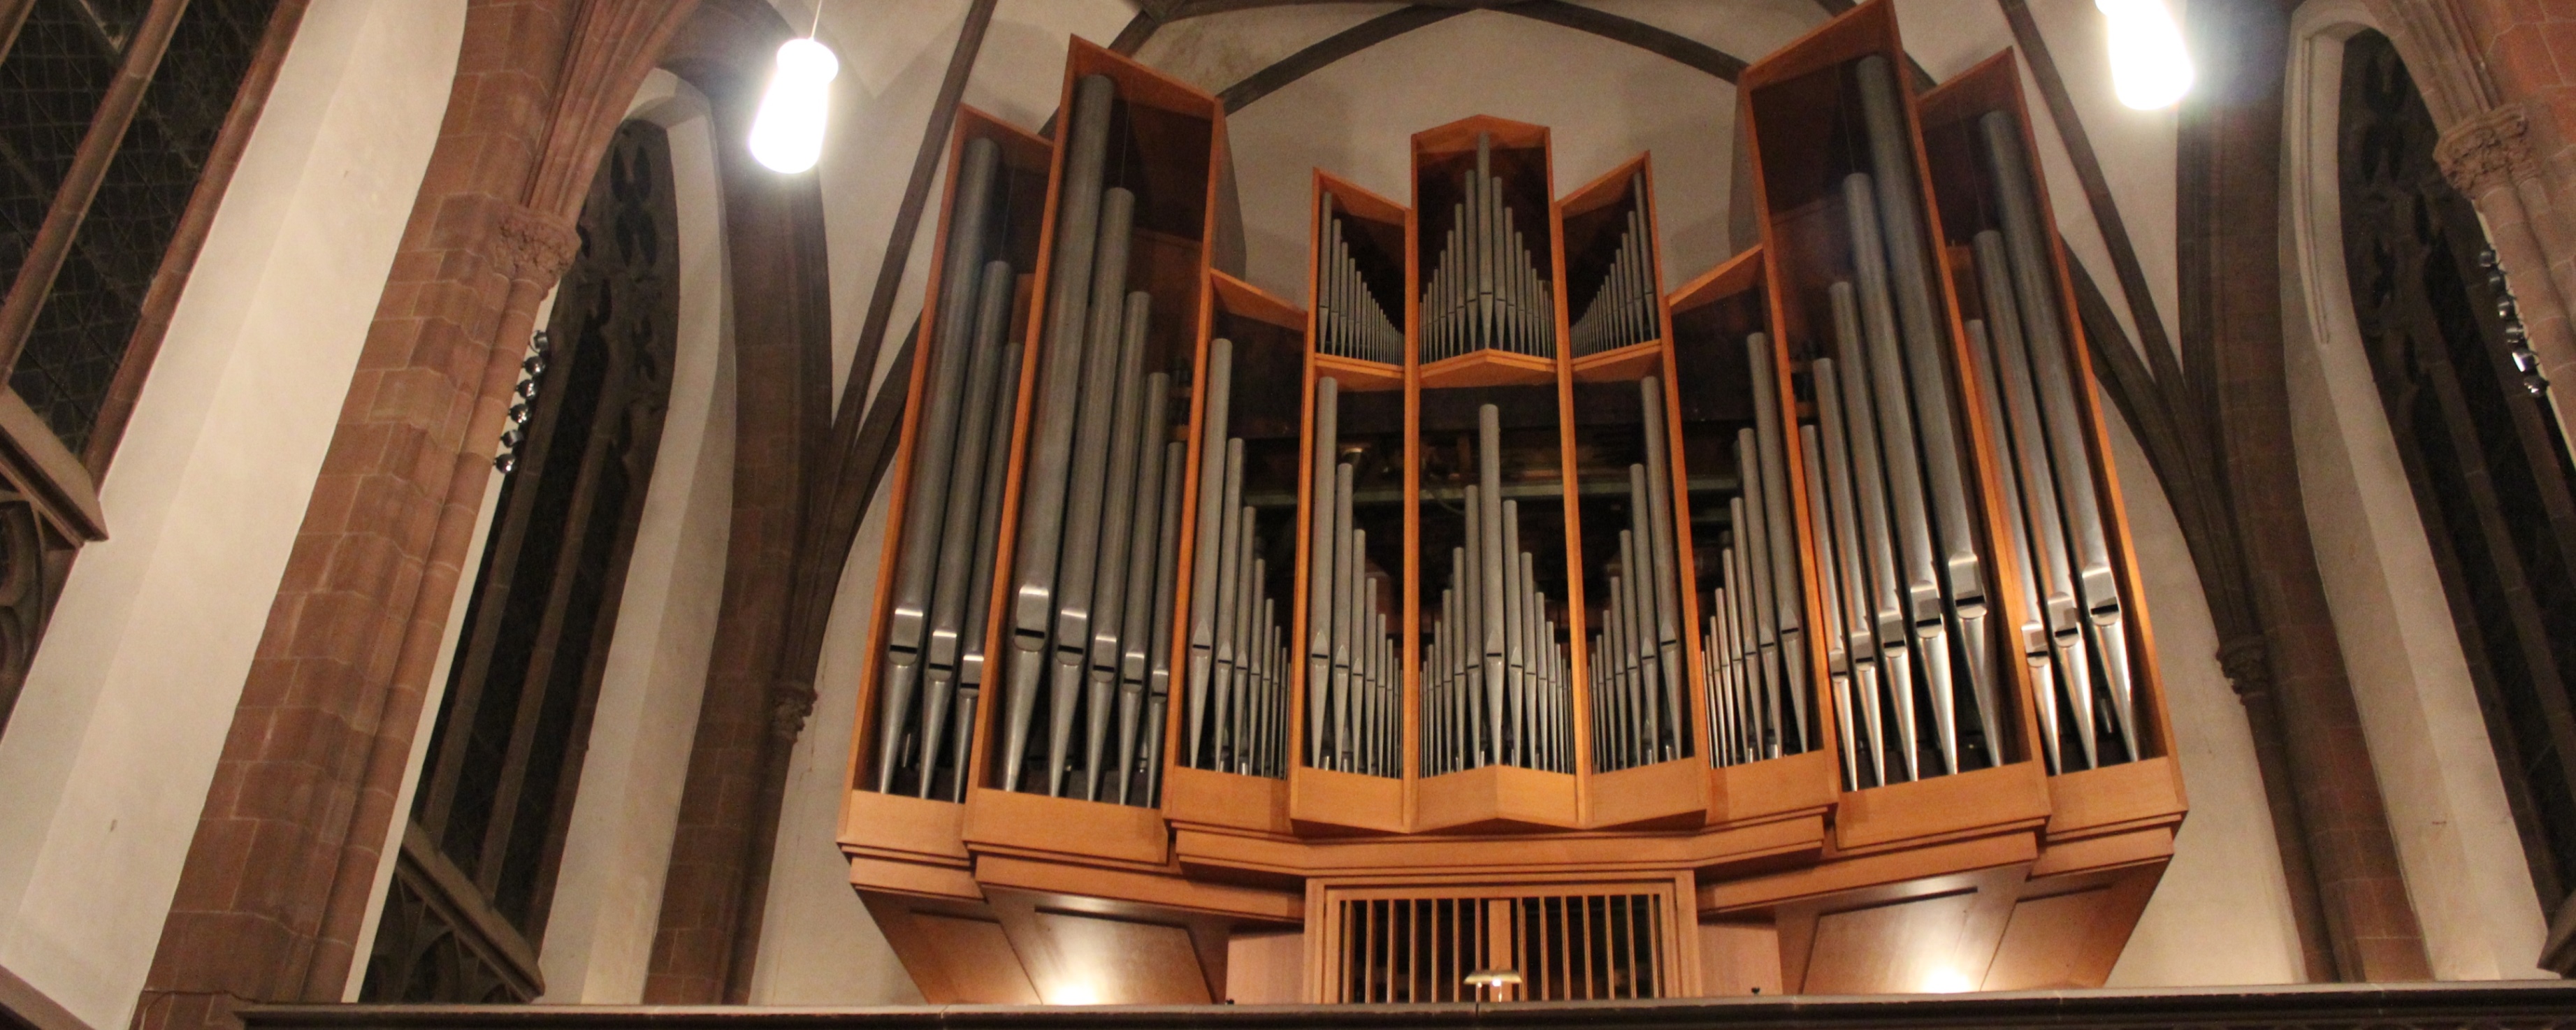 Schuke-Orgel in der Dreikönigskirche Frankfurt am Main